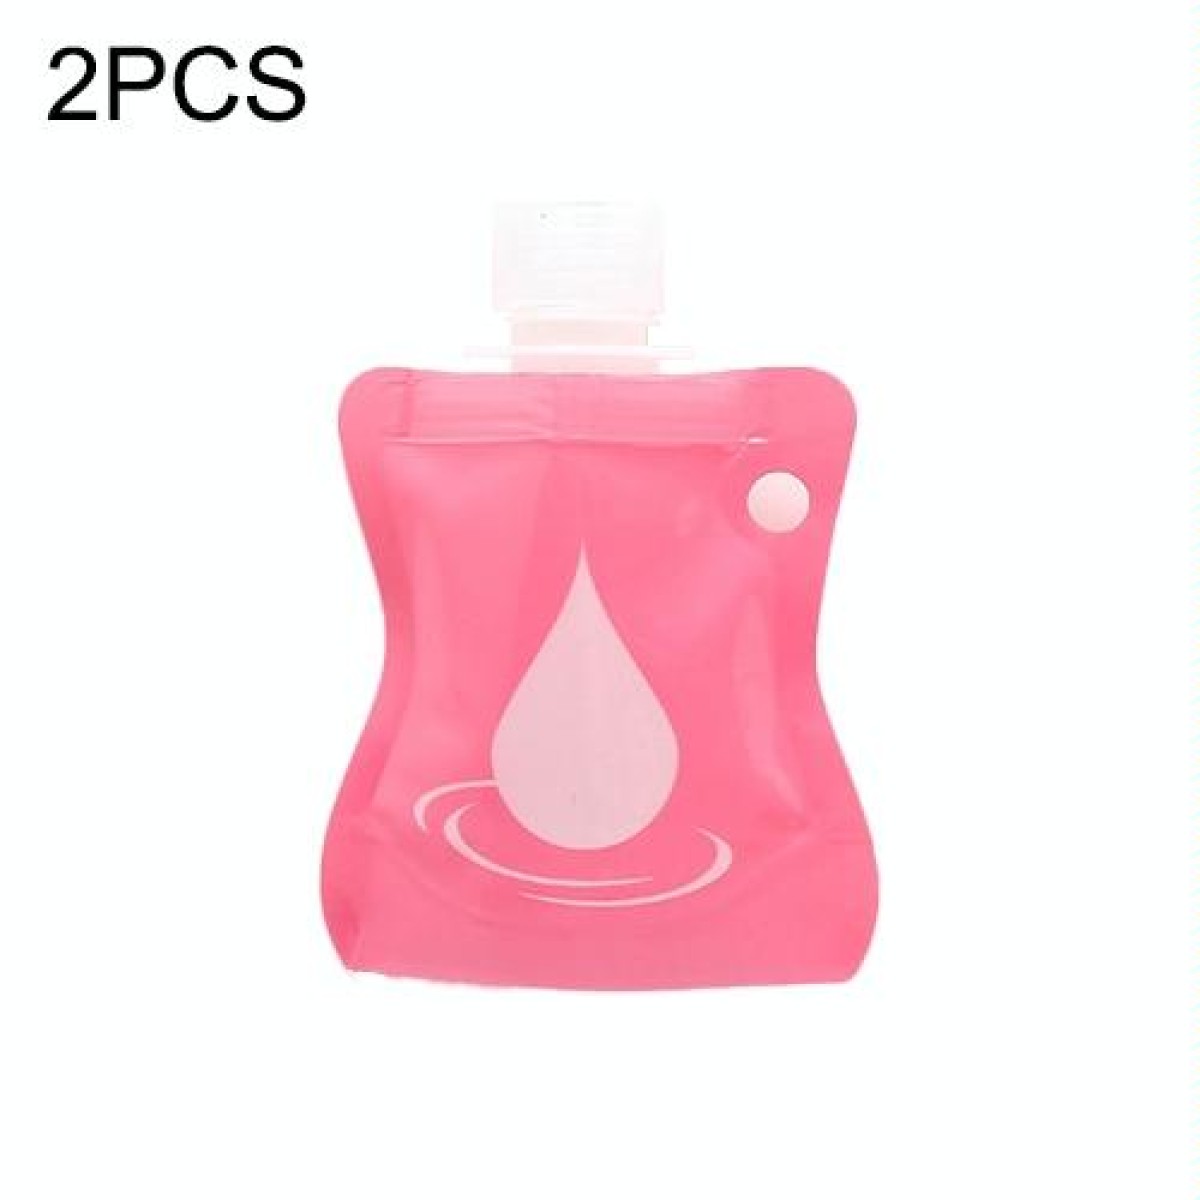 2 PCS Portable Silicone Lotion Bottle Hand Sanitizer Bottle Travel Soft Pack Shampoo Shower Gel Bottle( Water droplet pink)